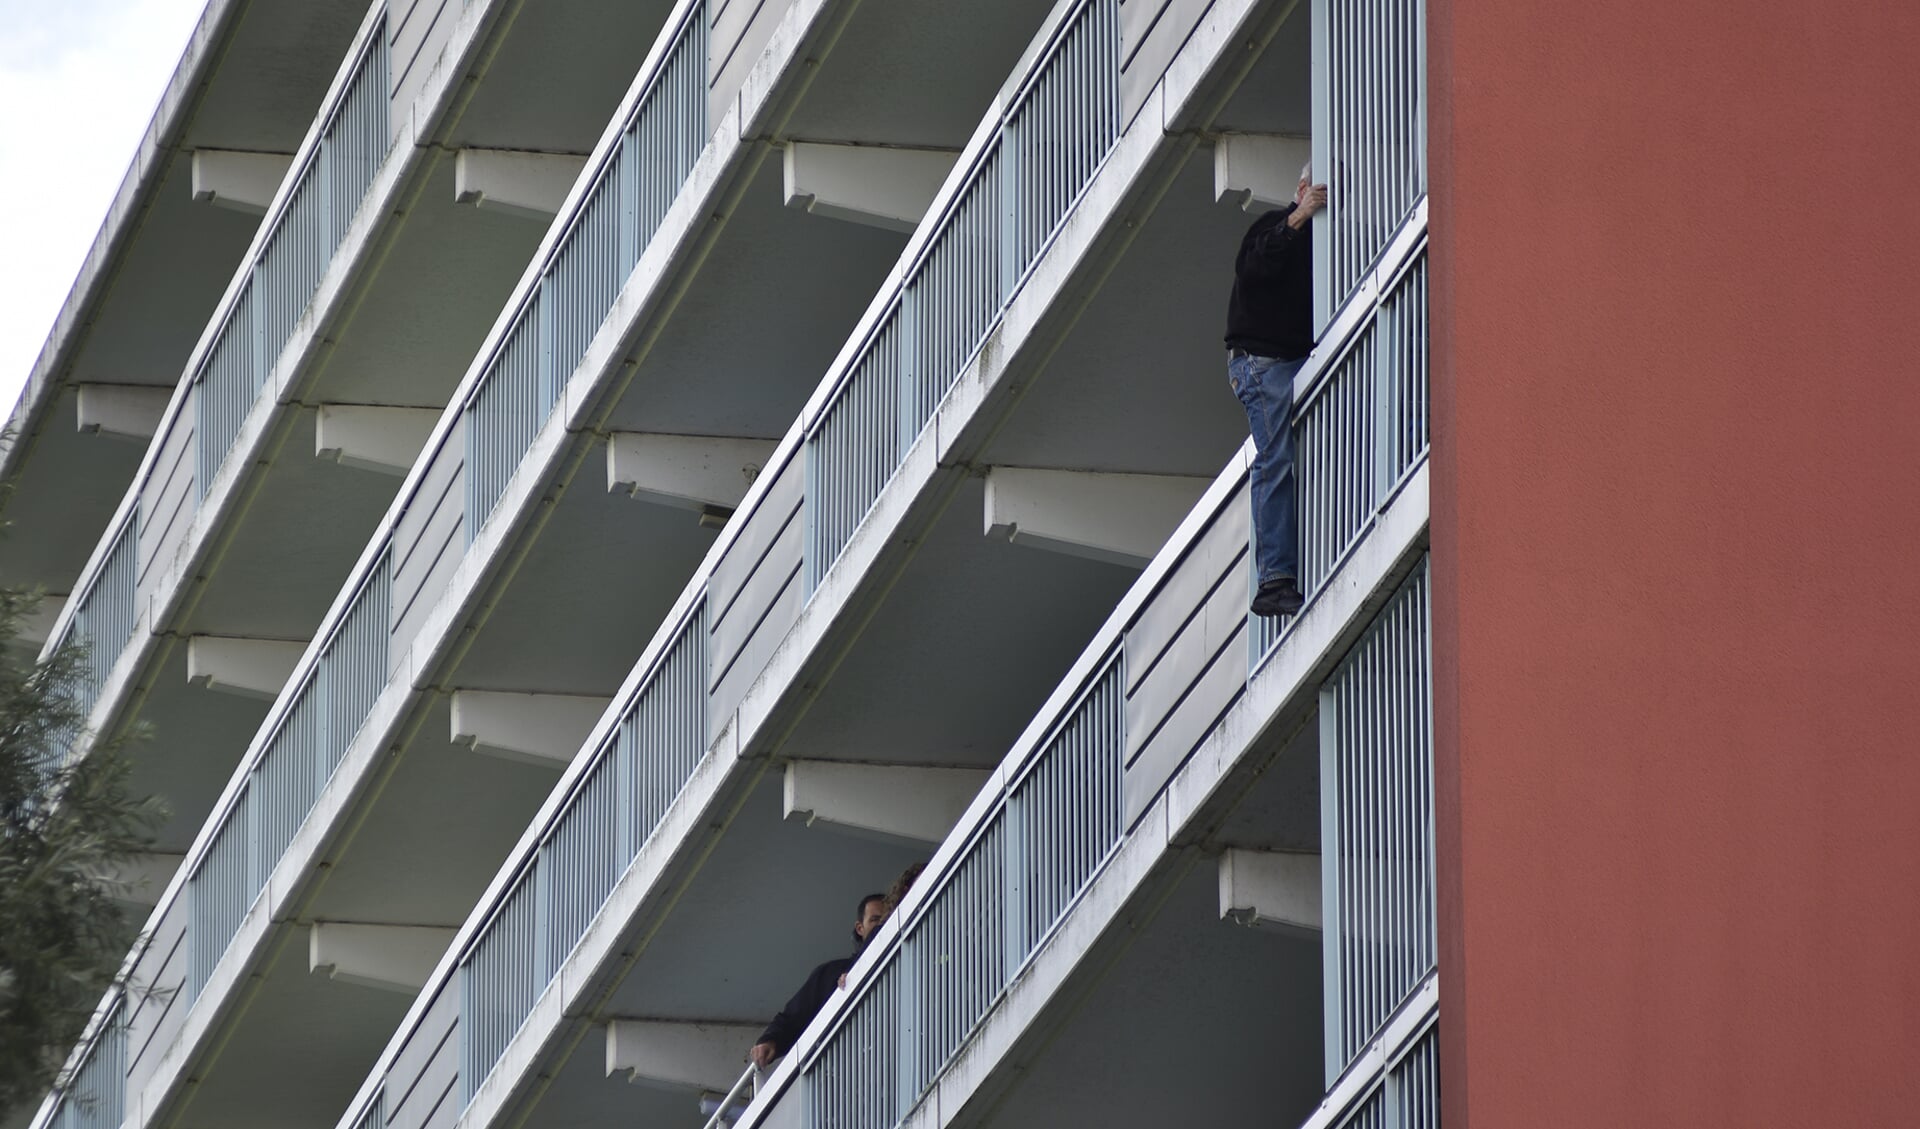 Hulpdiensten proberen de man te overreden naar de veilige kant van het balkon te komen. (Foto: René Bakker)